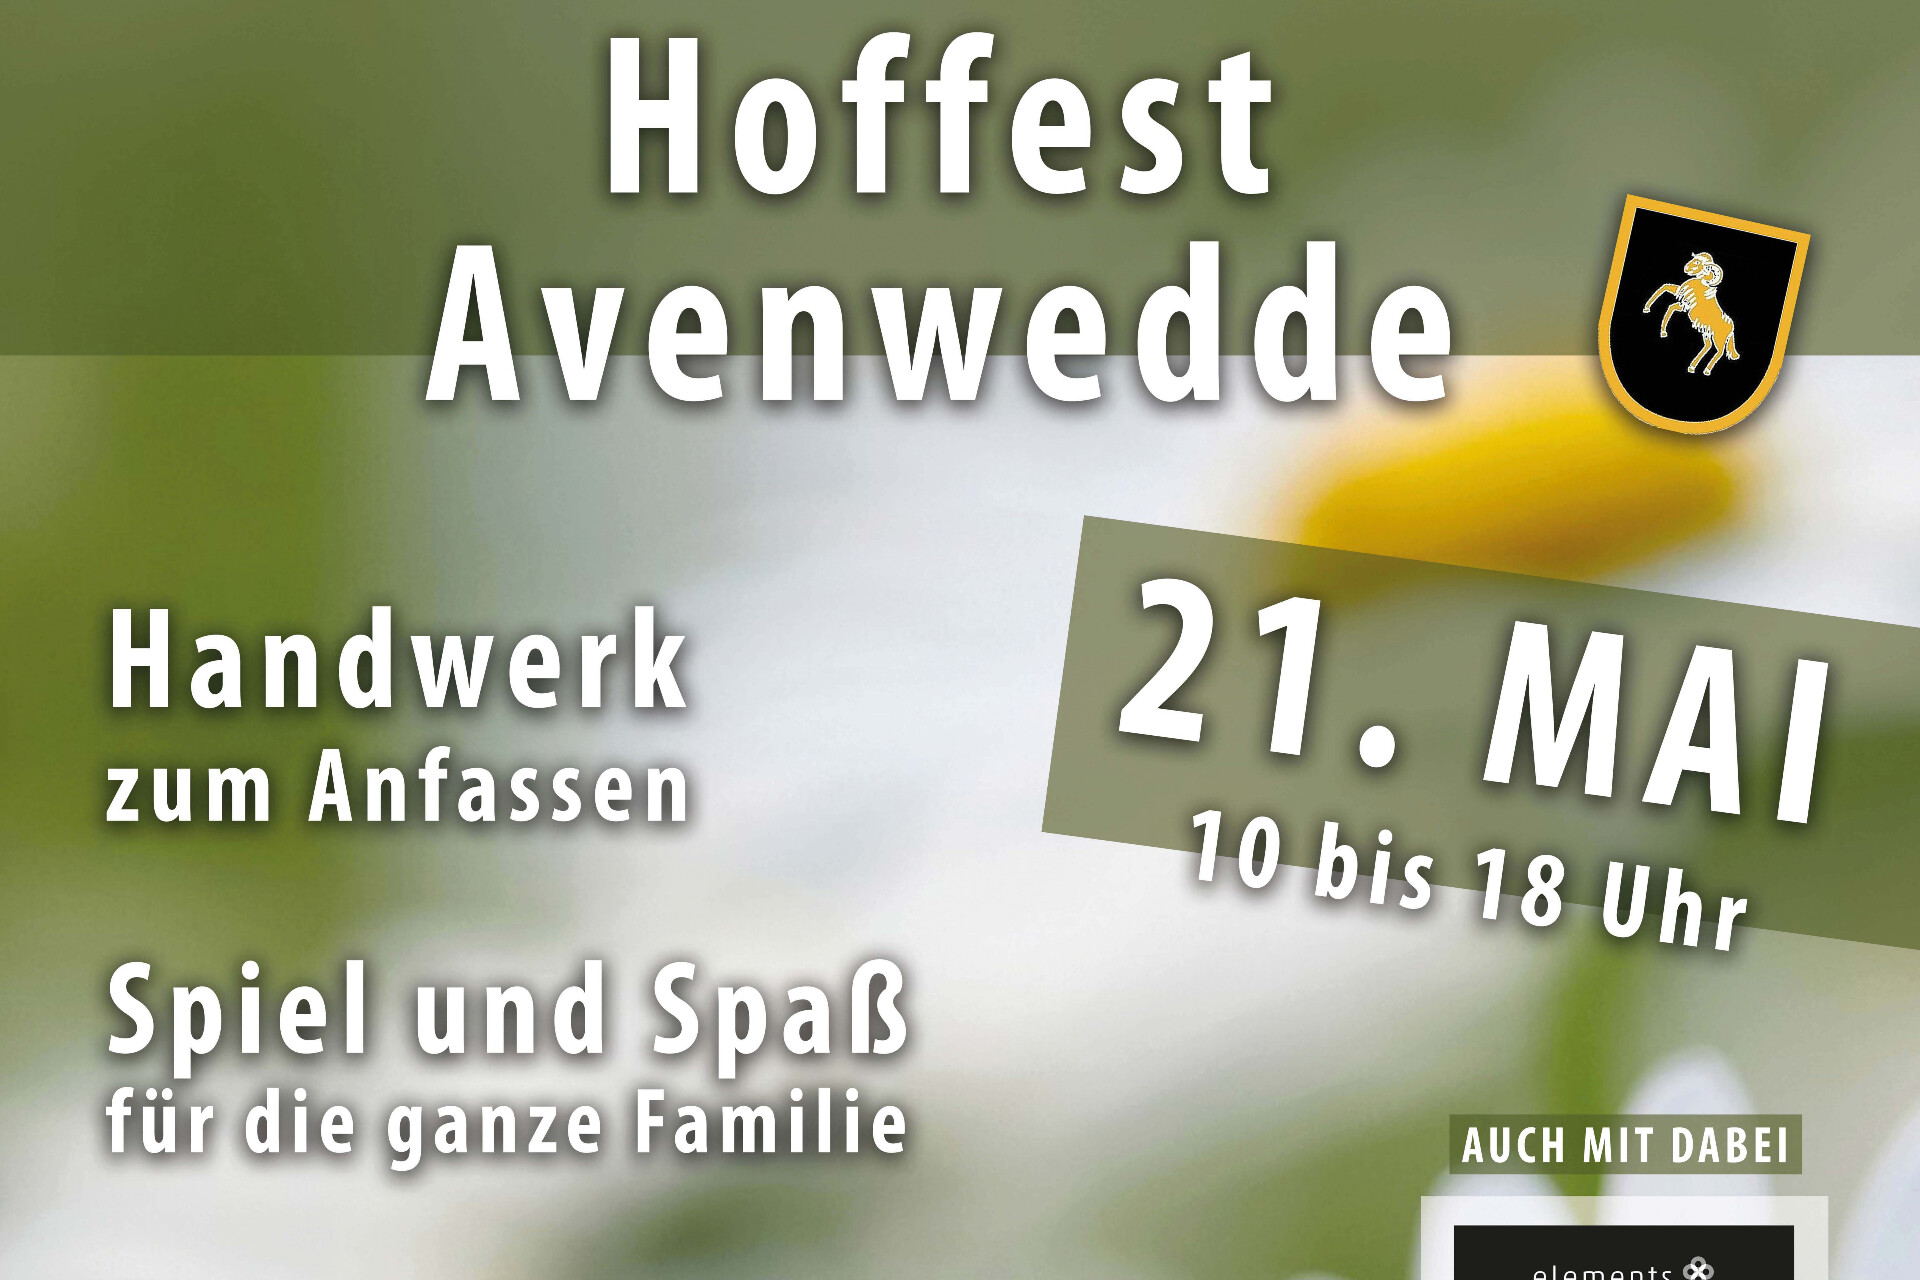 Hoffest Avenwedde mit Handwerk zum Anfassen